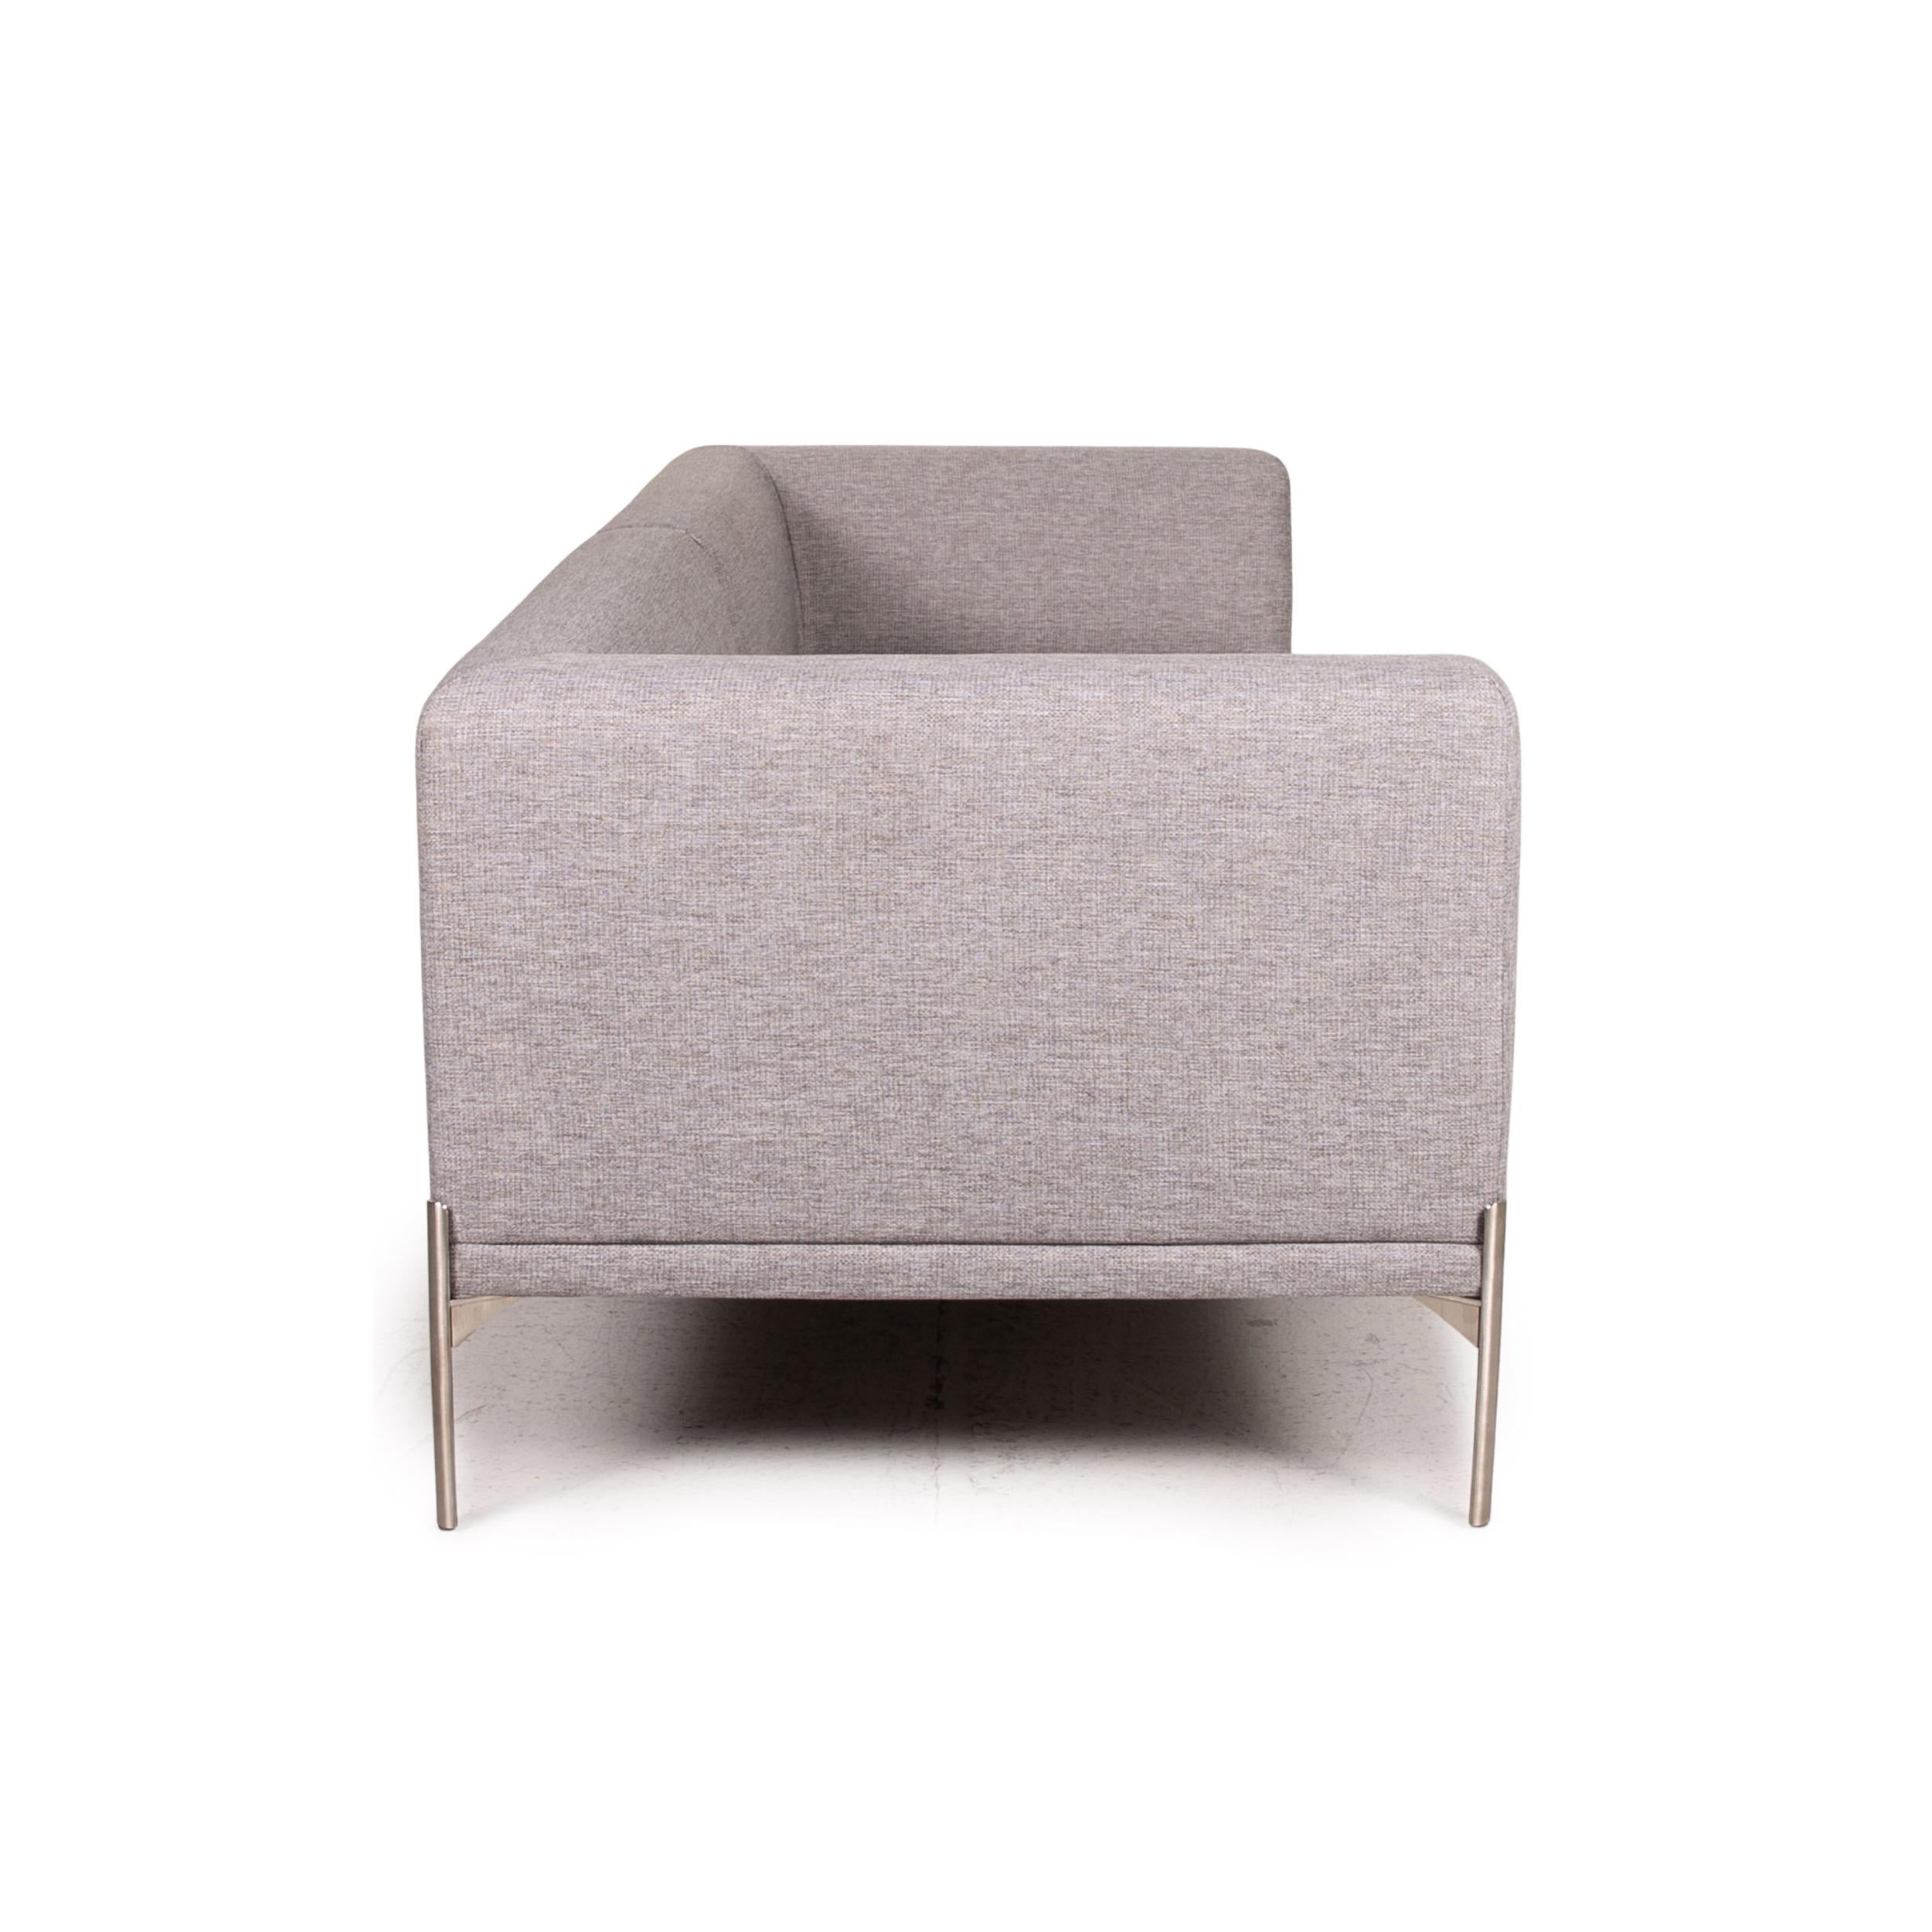 Contemporary Bolia Caisa Fabric Sofa Gray Light Gray Three-Seater Couch